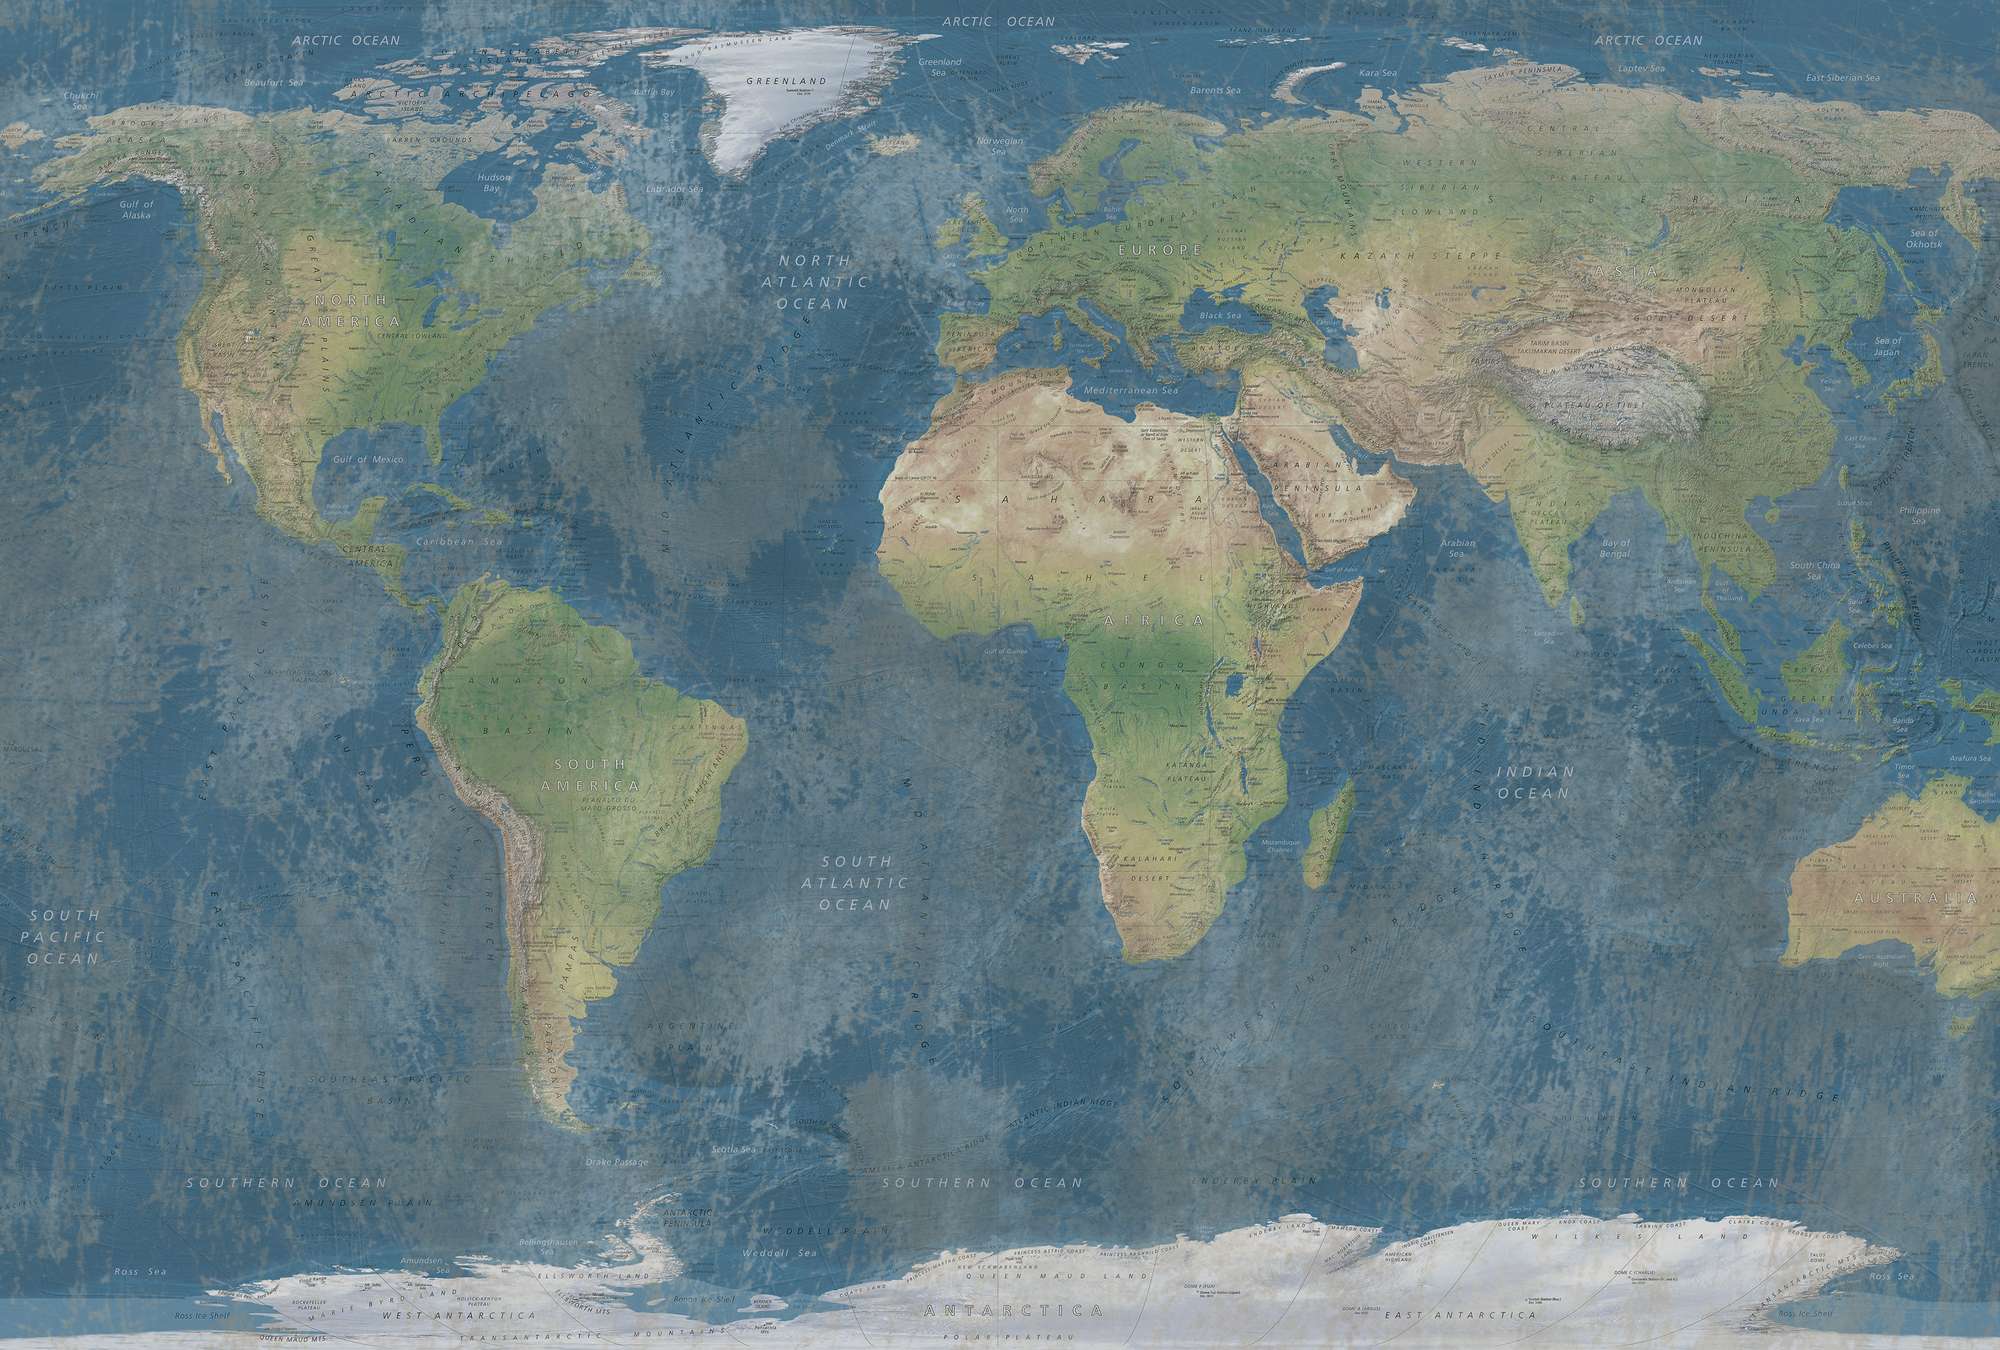             Mural del mapa del mundo en combinación de colores naturales
        